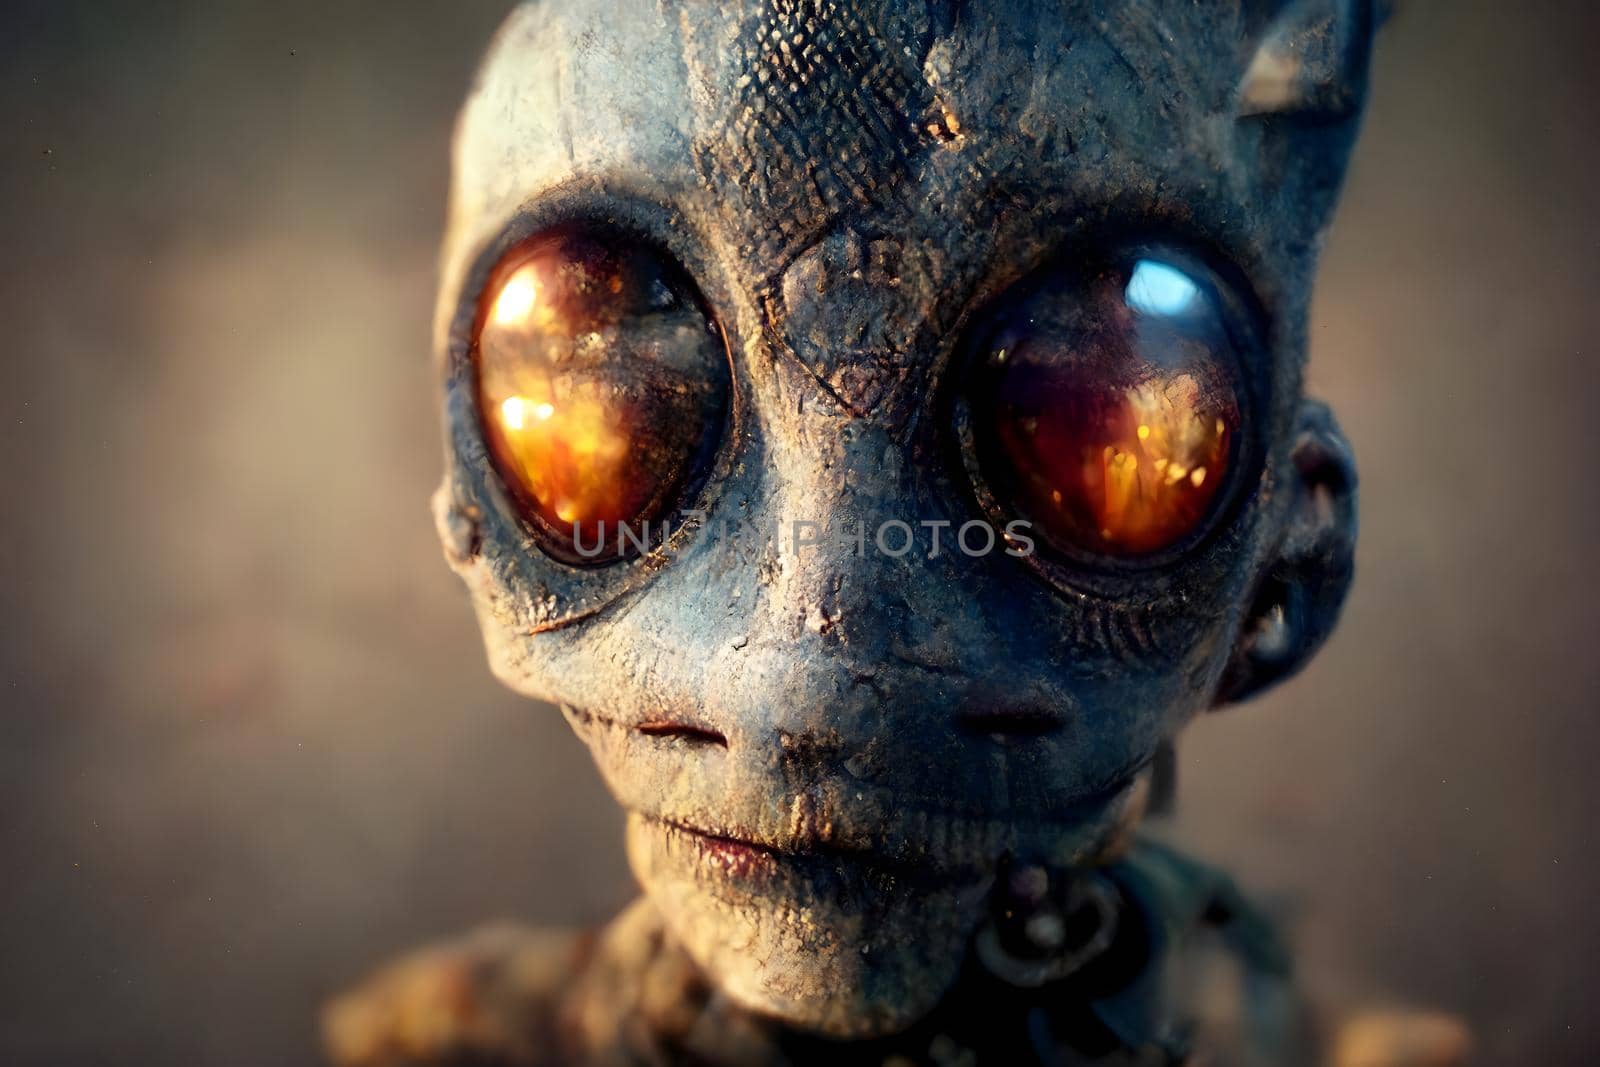 humanoid alien portrait, neural network generated art by z1b